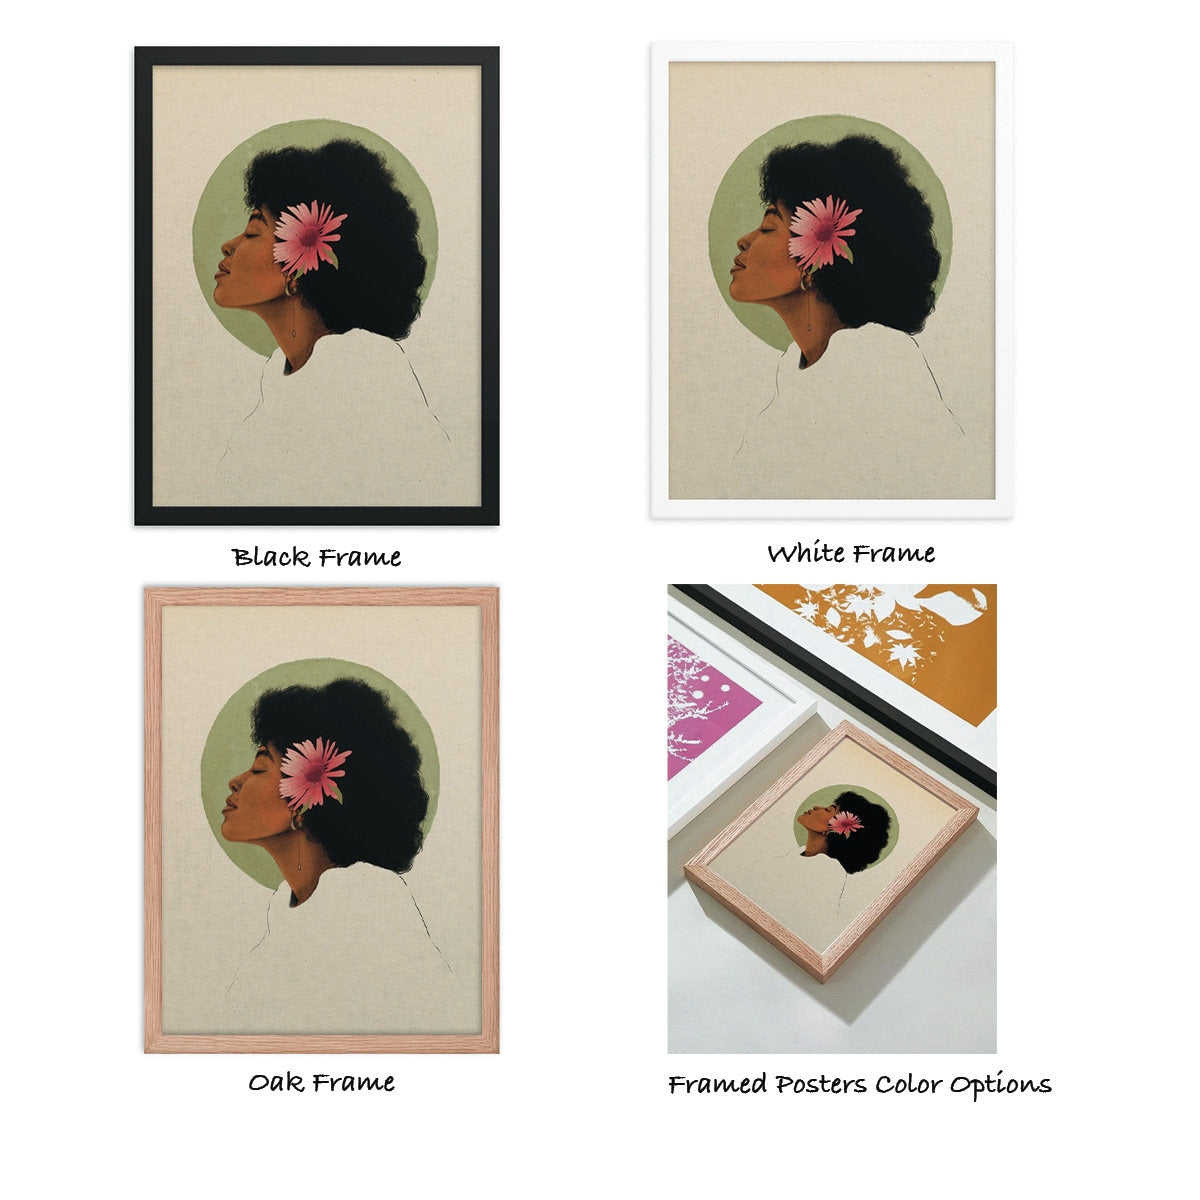 Black Woman Poster, Woman Portrait, Female Art Print, Wall Art Poster